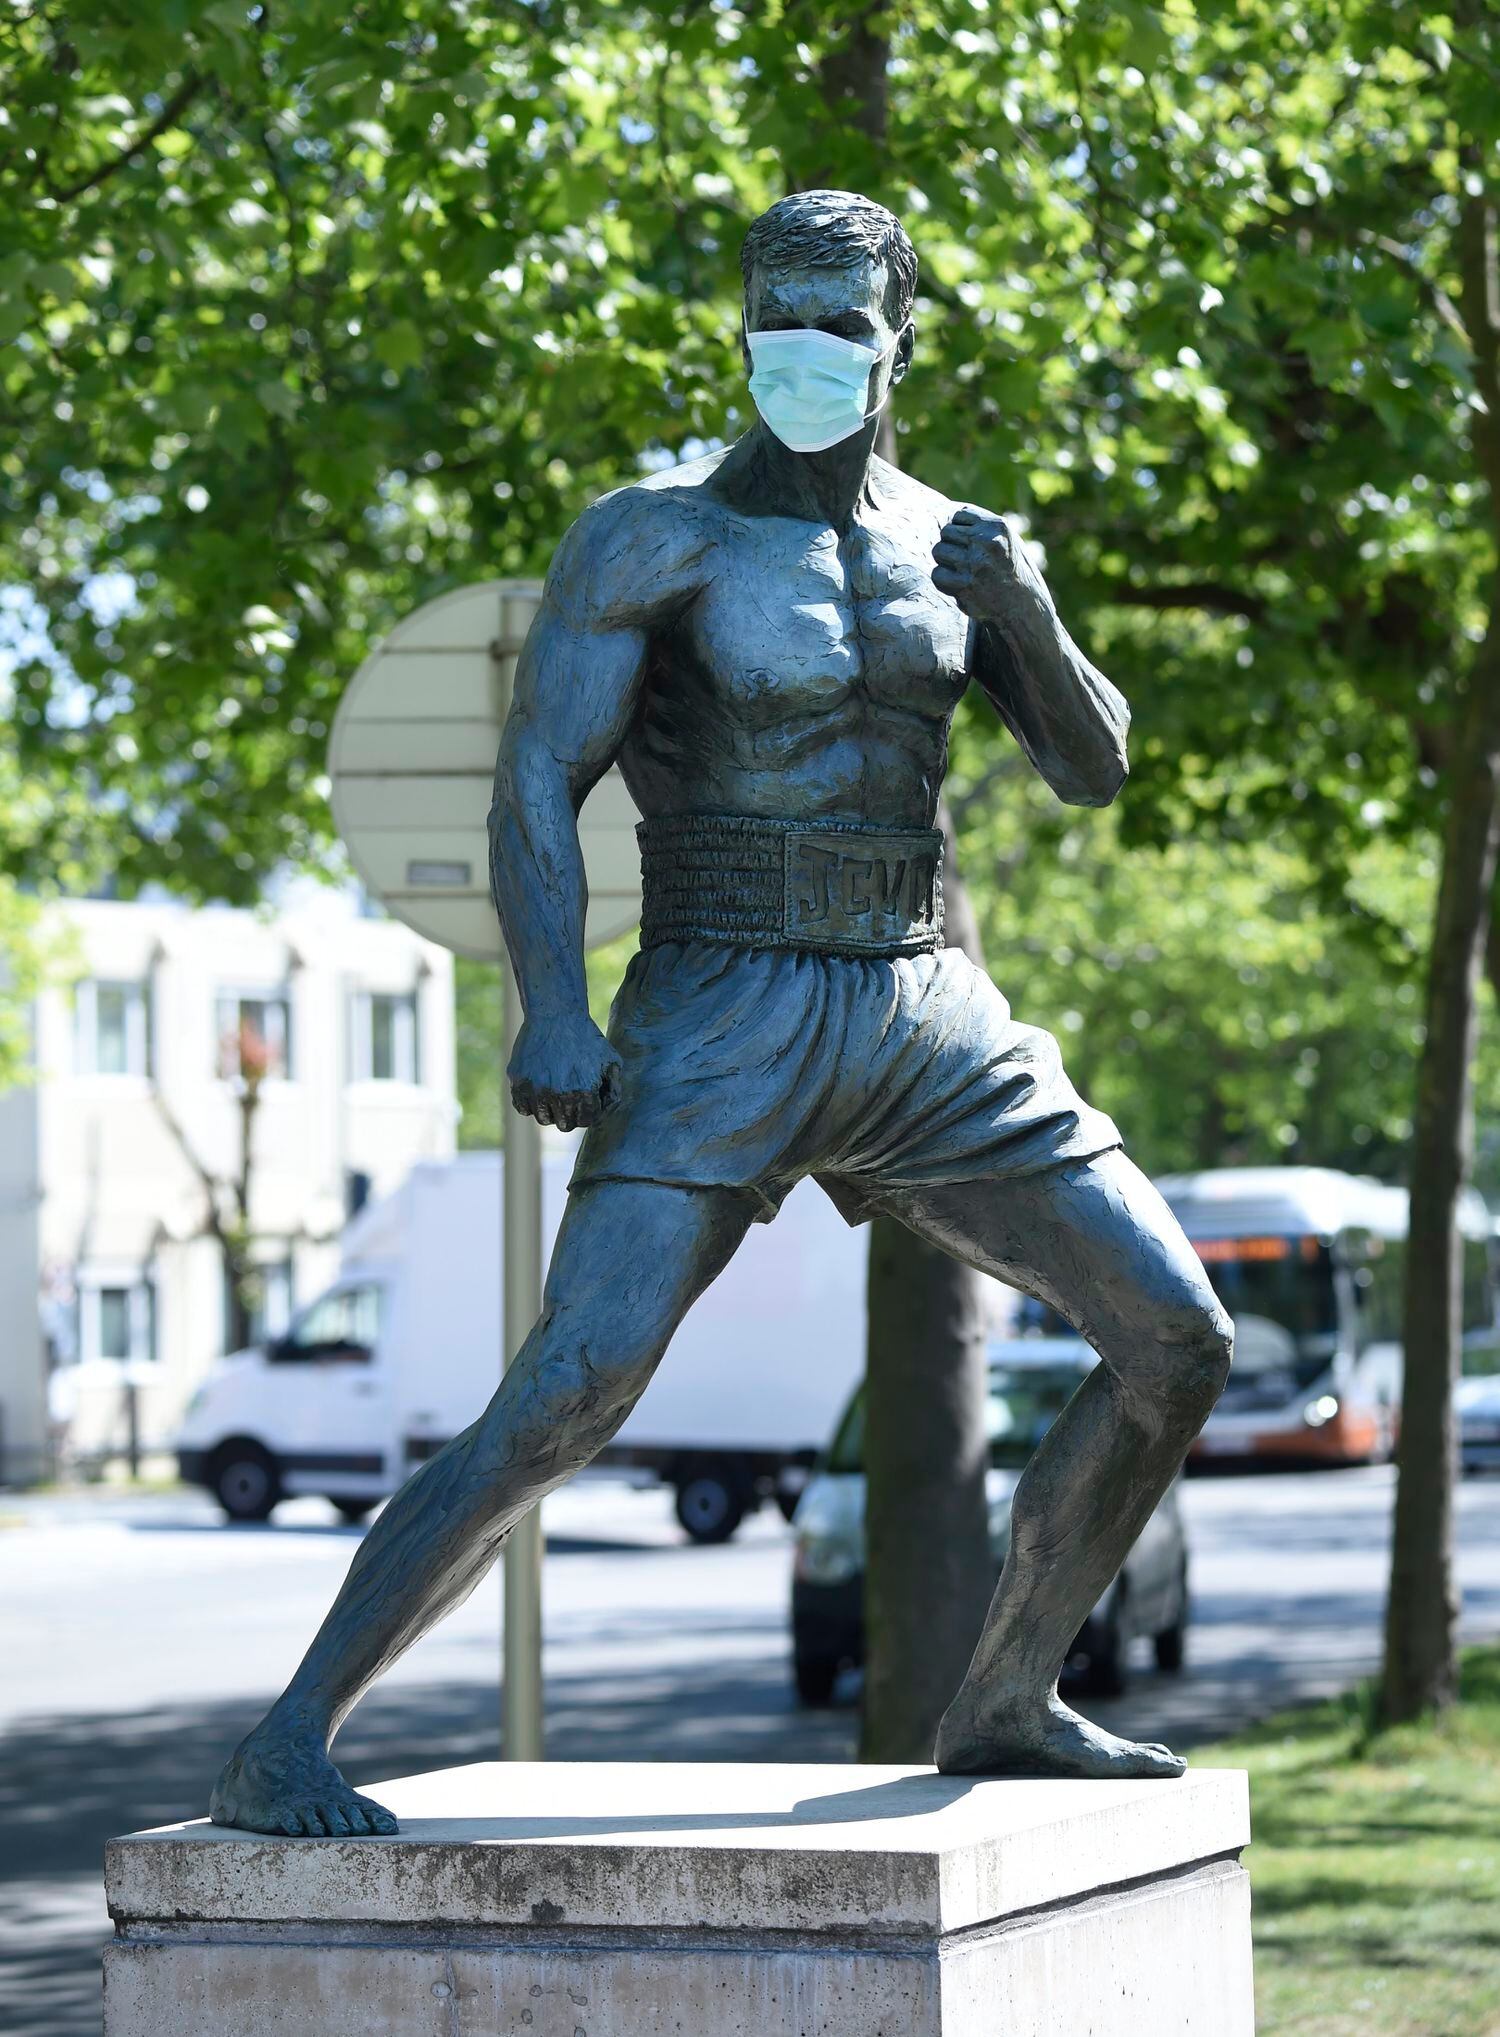 Em maio, a estátua de Van Damme na Bélgica apareceu com uma máscara para alertar sobre a necessidade de seu uso por causa do novo coronavírus.